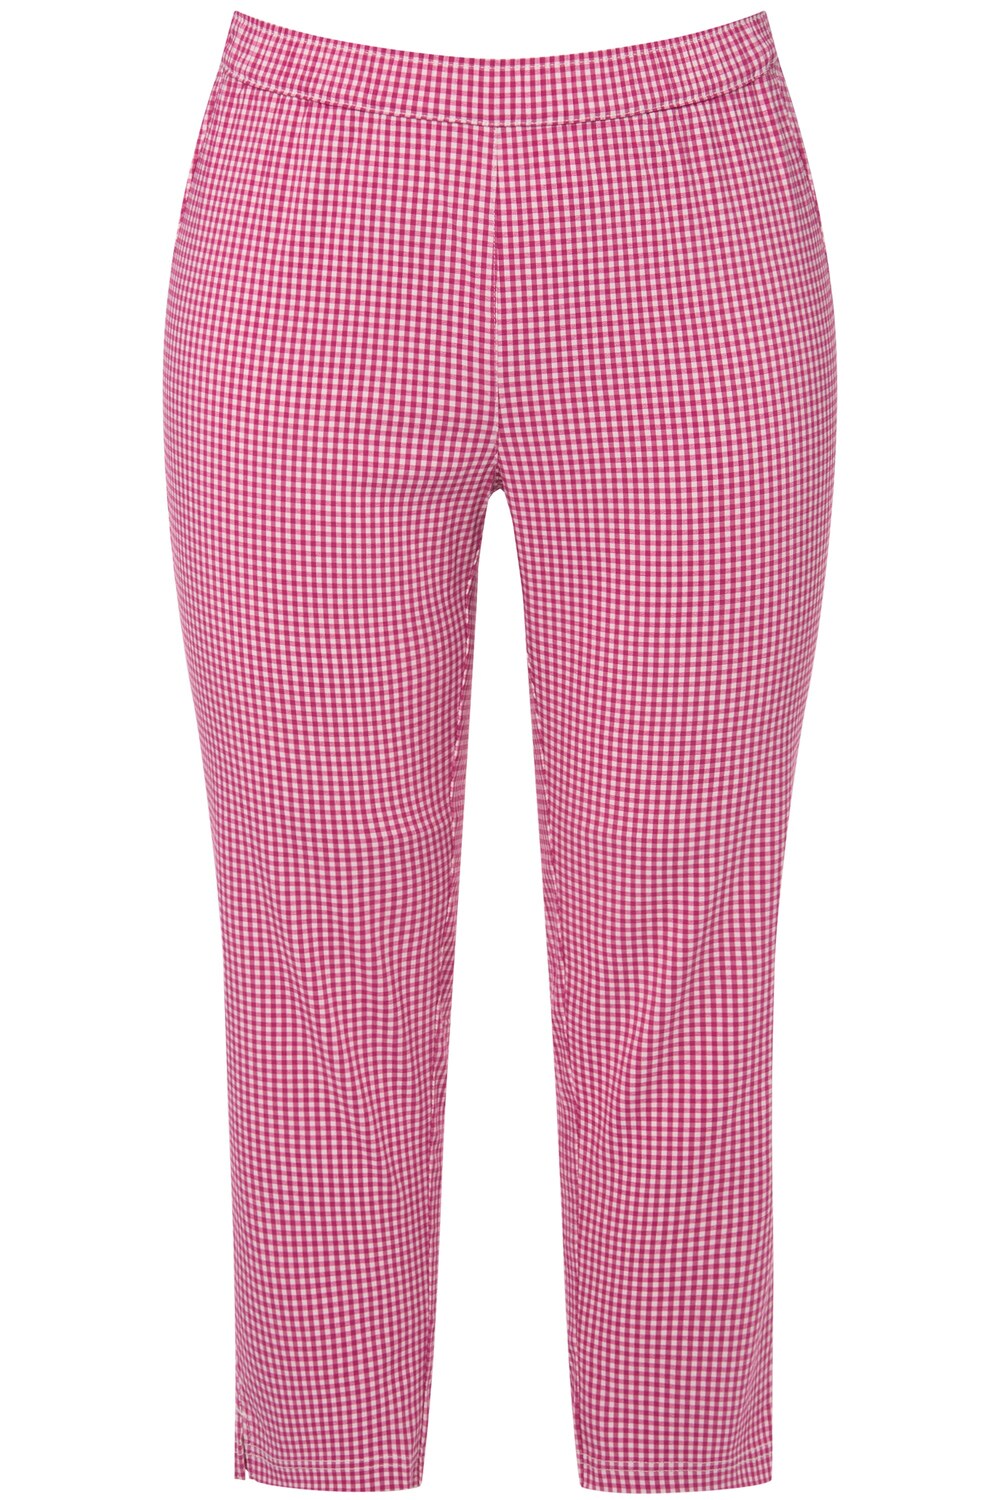 Обычные плиссированные брюки Ulla Popken Sienna, розовый